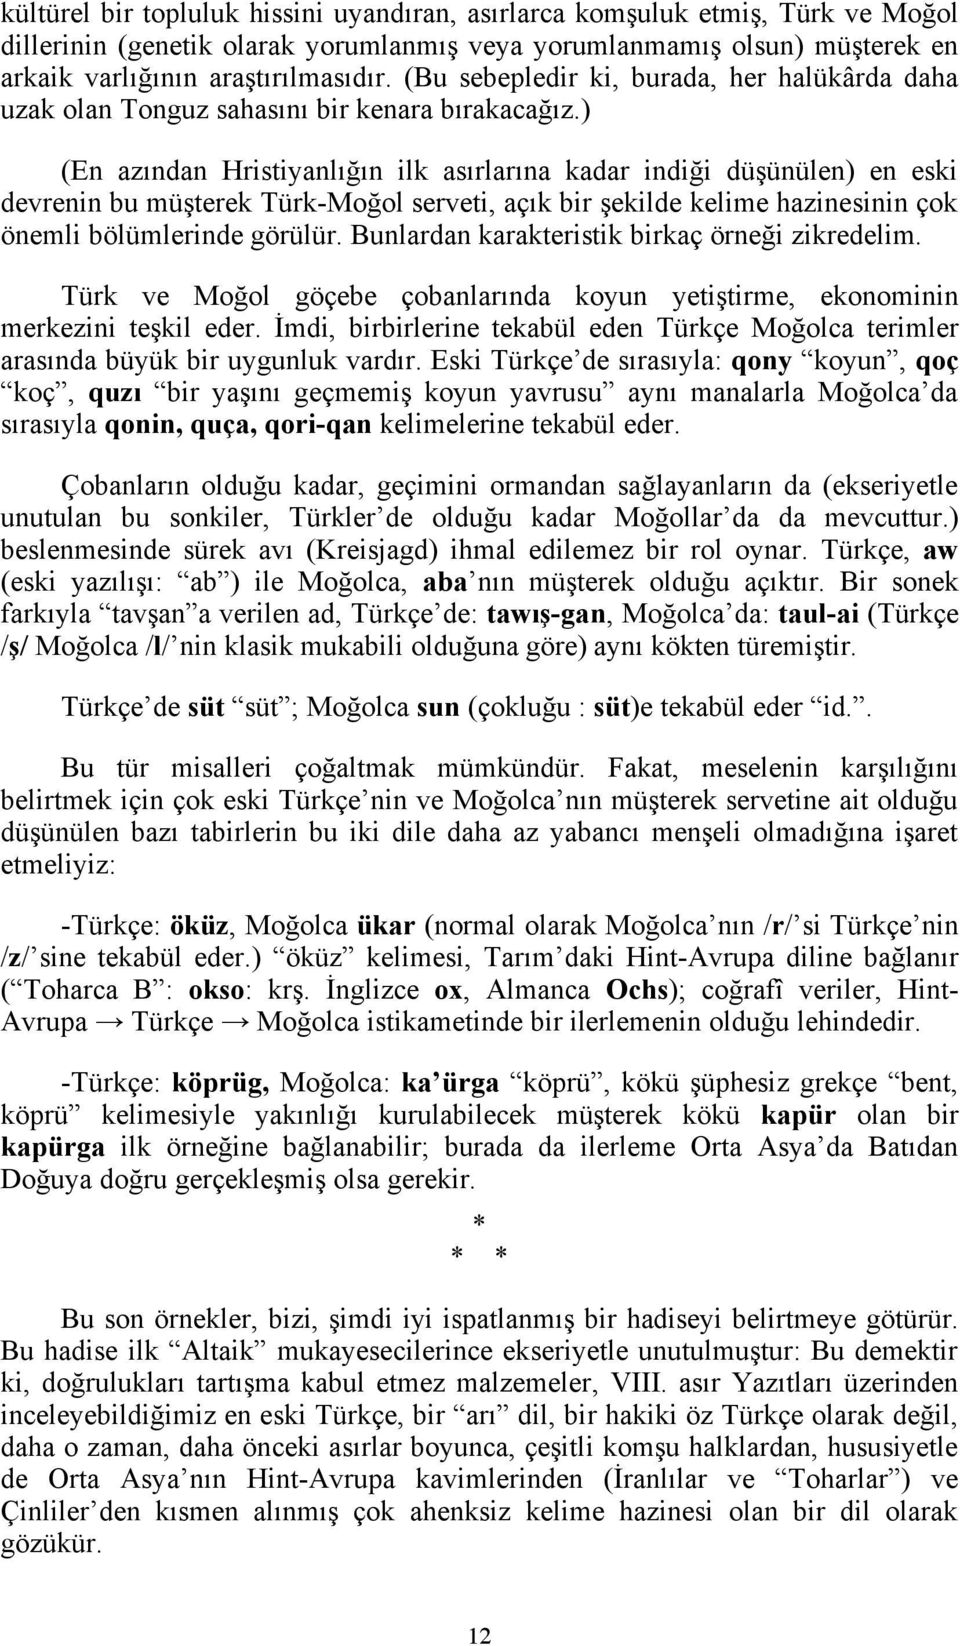 ) (En azından Hristiyanlığın ilk asırlarına kadar indiği düşünülen) en eski devrenin bu müşterek Türk-Moğol serveti, açık bir şekilde kelime hazinesinin çok önemli bölümlerinde görülür.